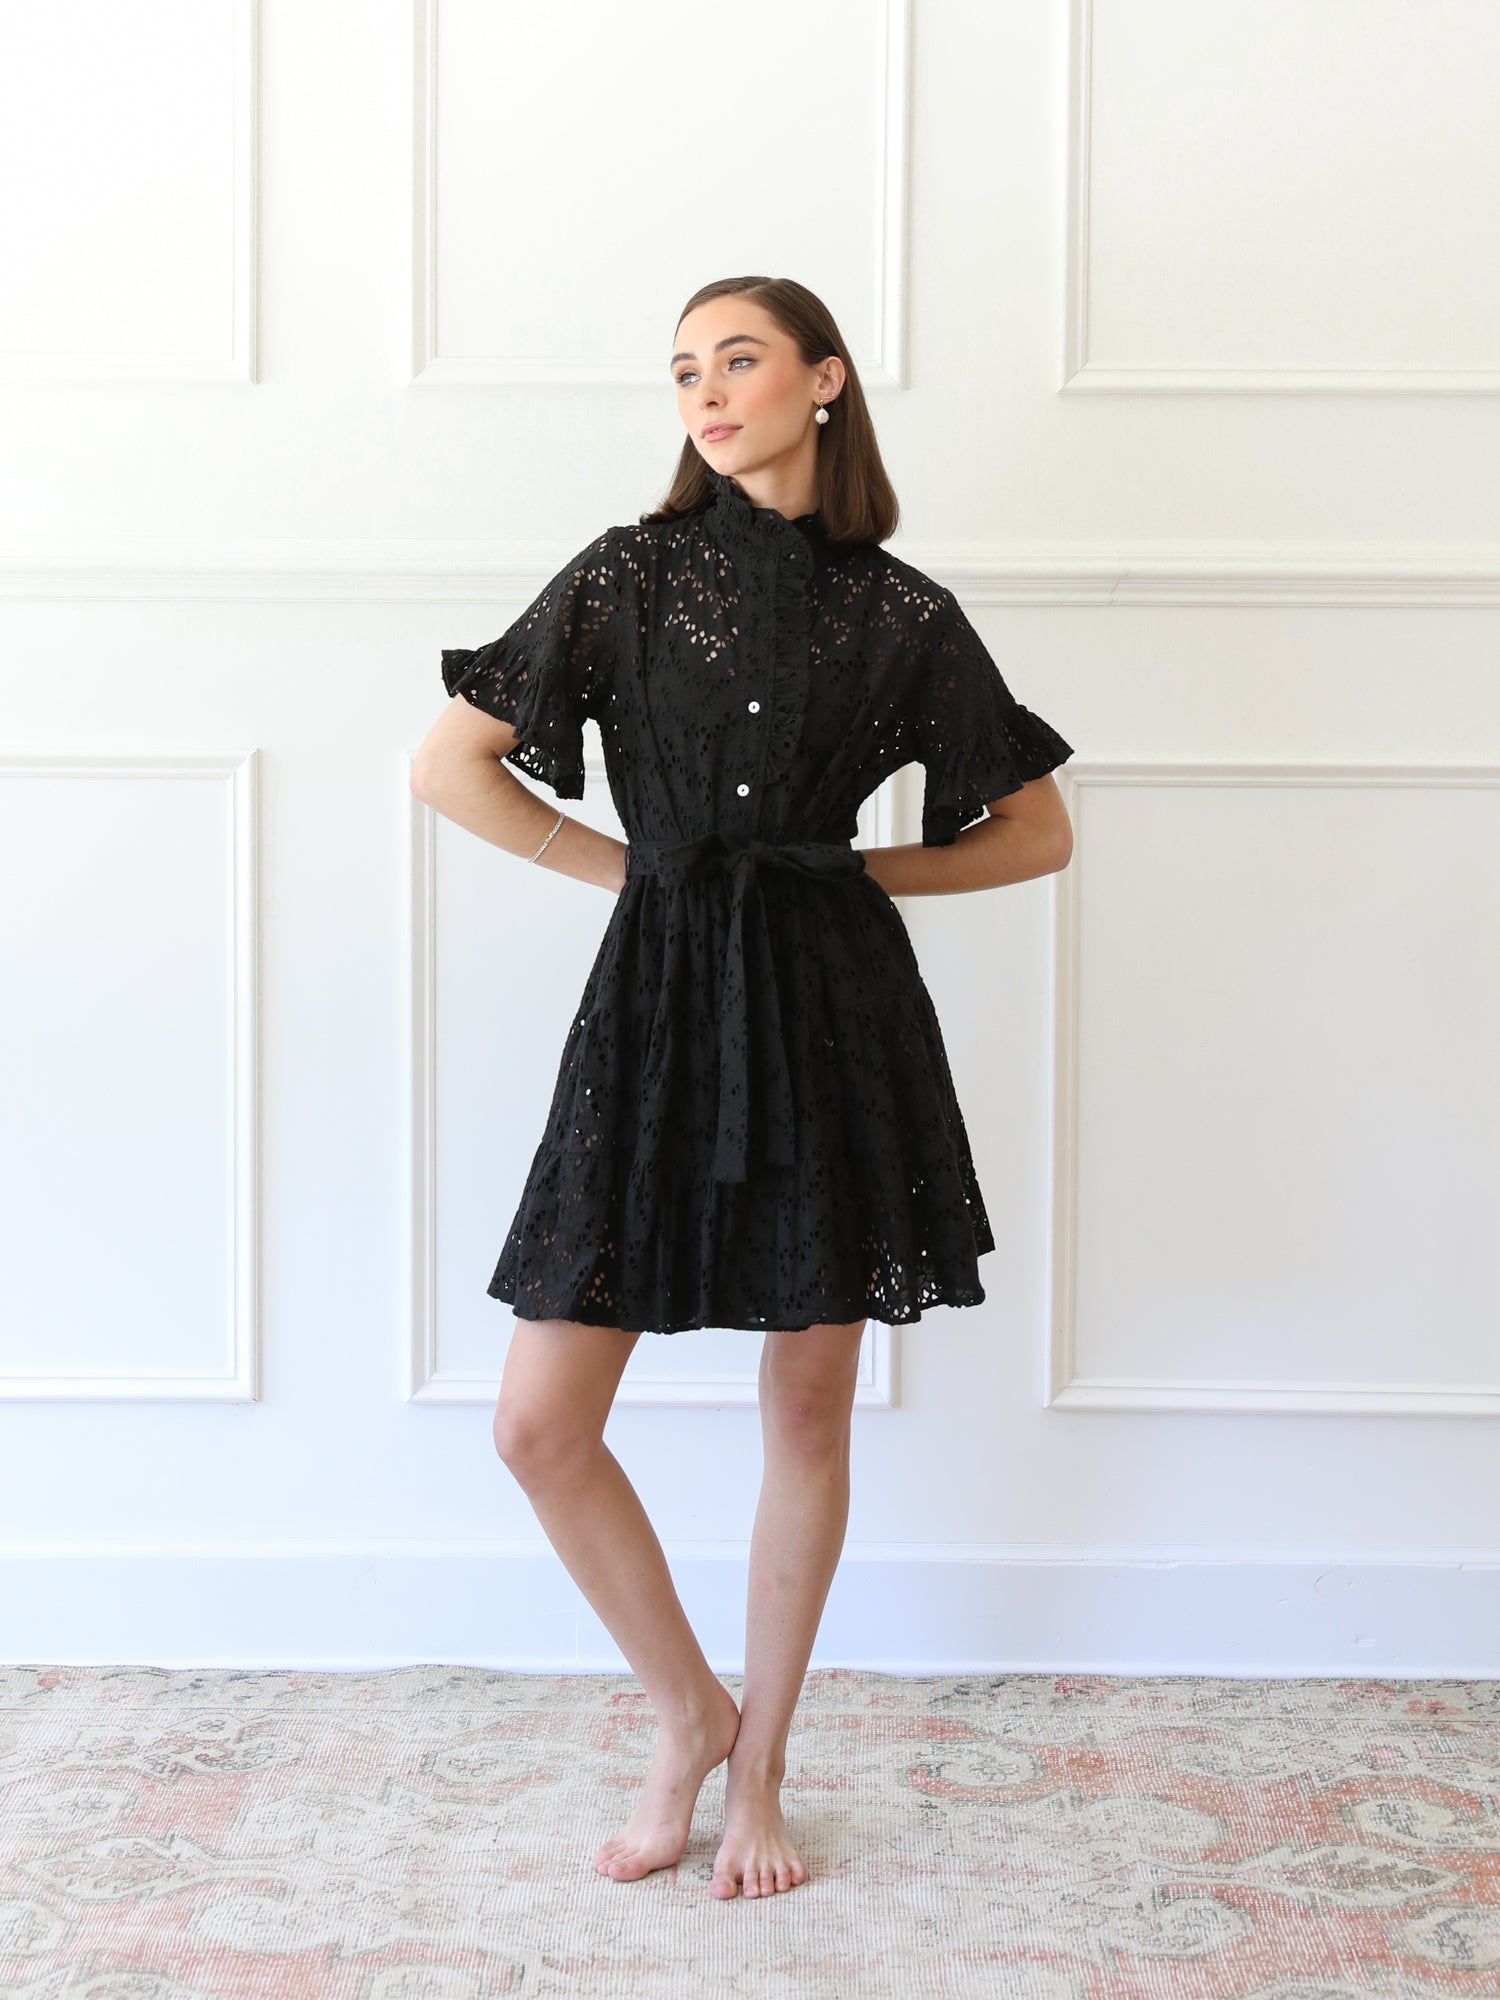 MILLE Clothing Violetta Dress in Black Floral Eyelet